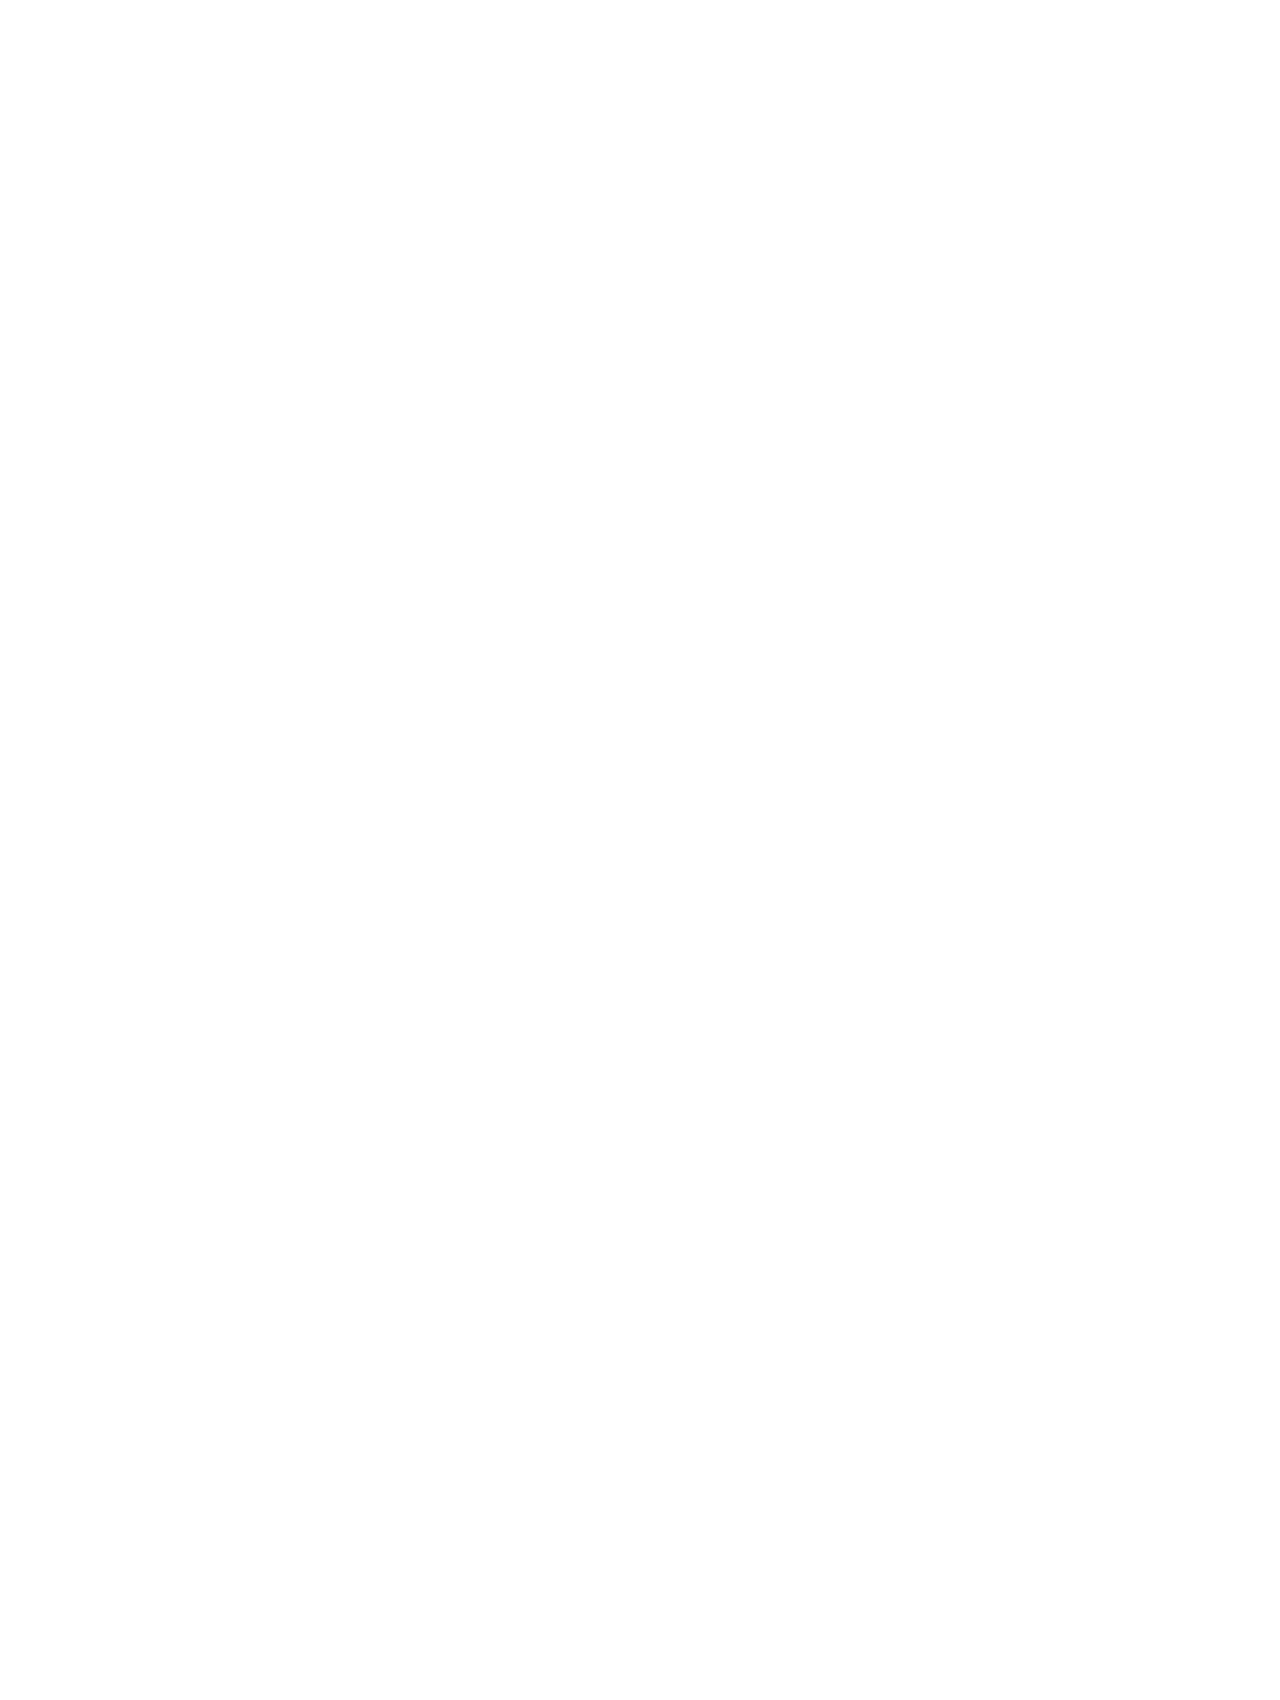 Steve Neal Real Estate